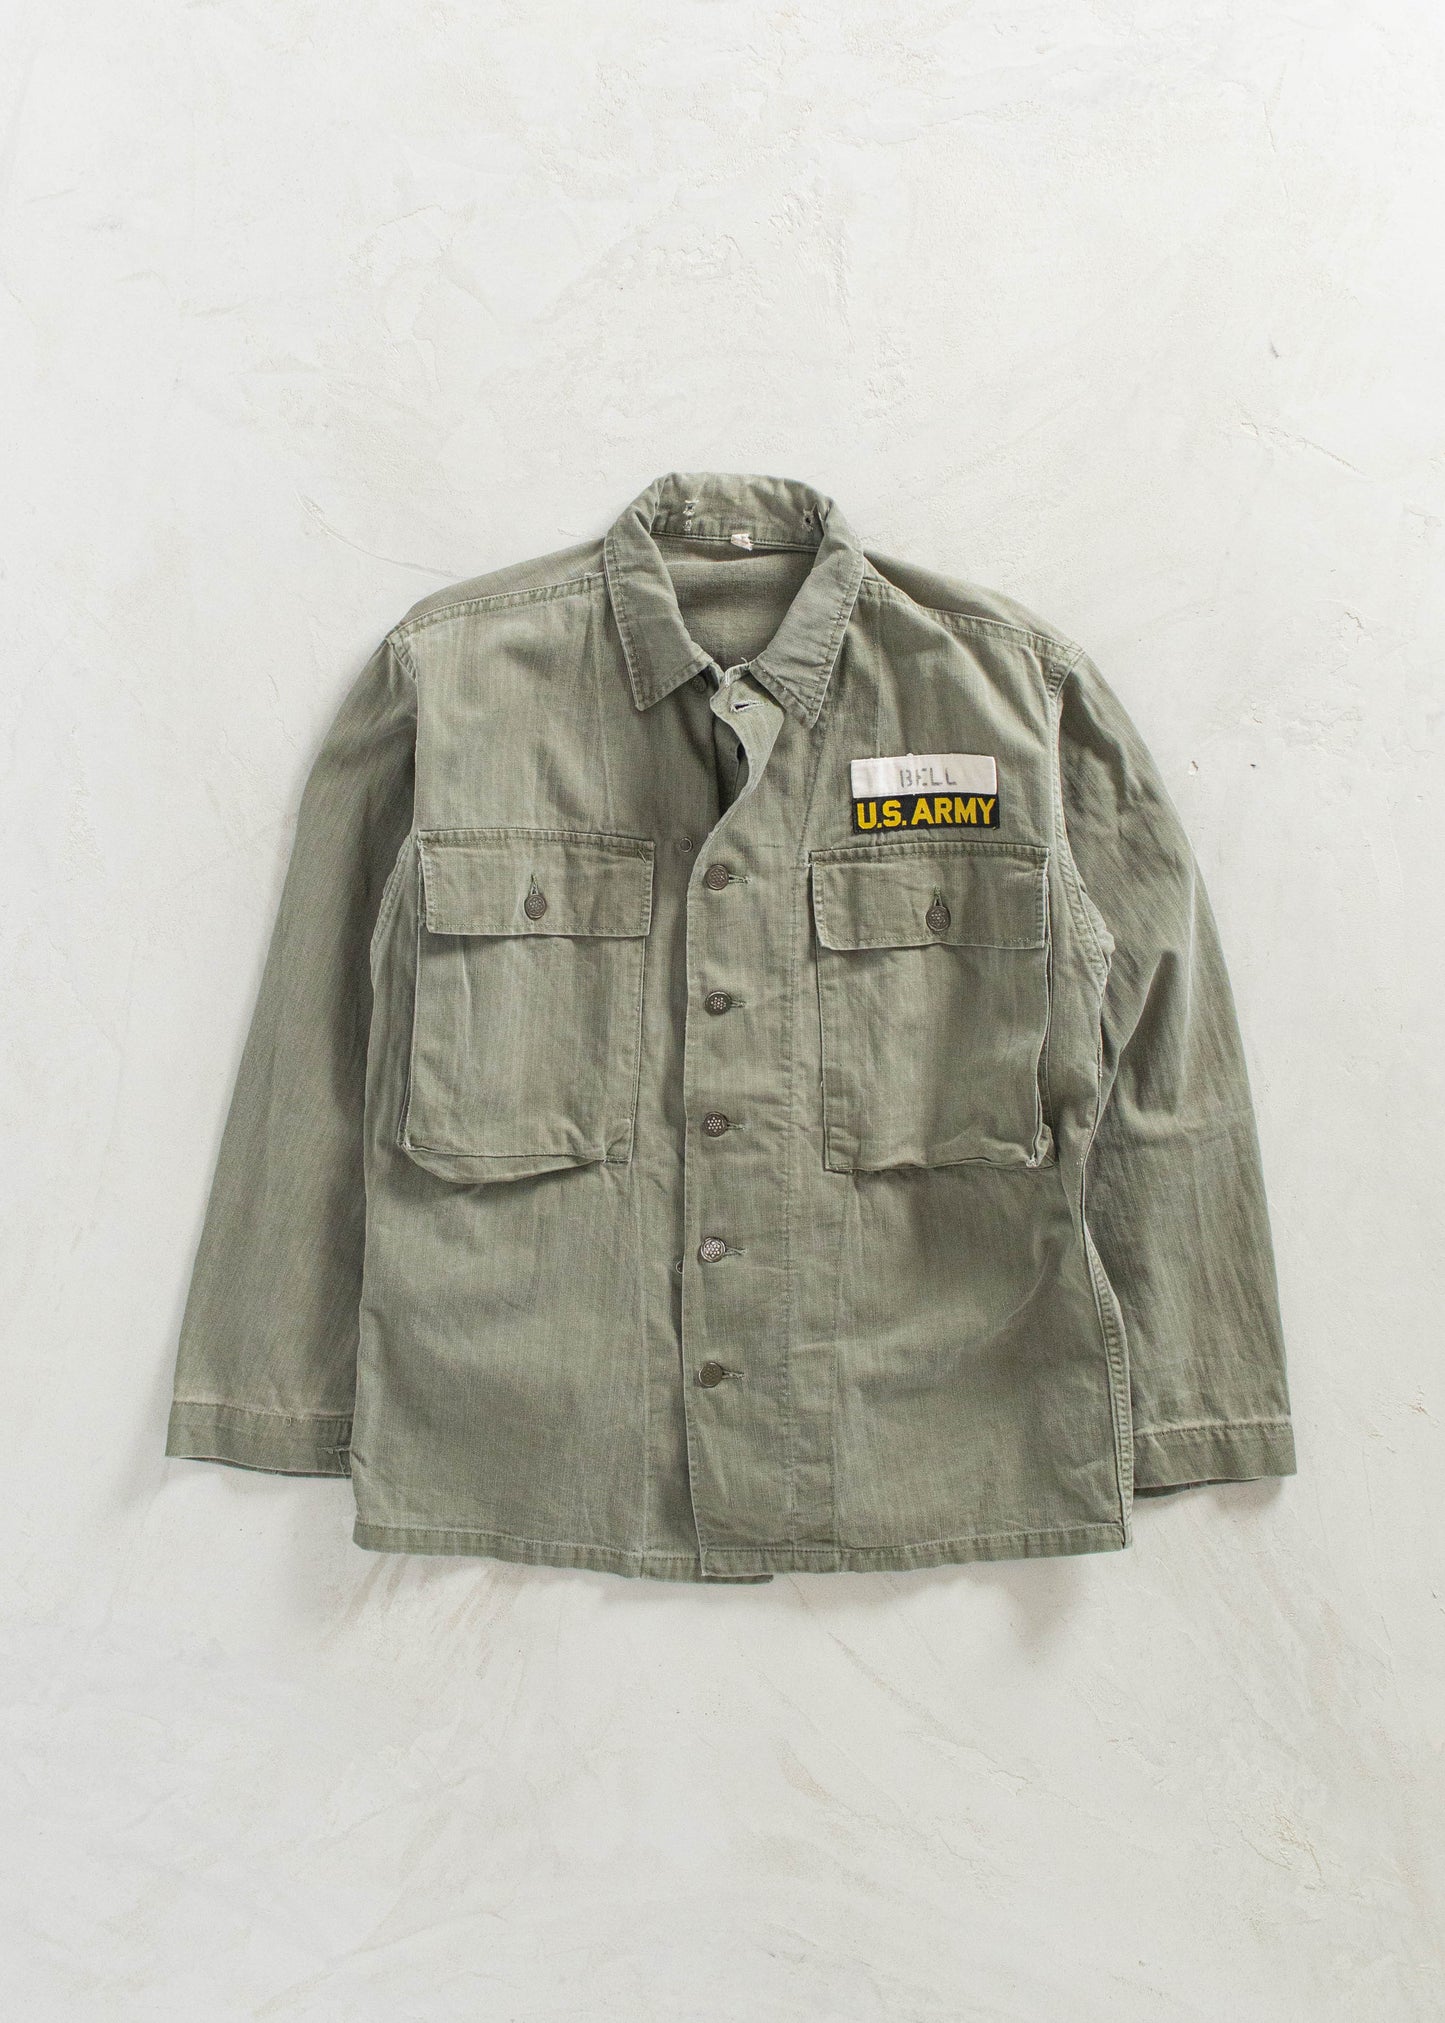 Vintage 1940s WWII Herringbone Twill 13 Star Fatigue Shirt Size Size M/L